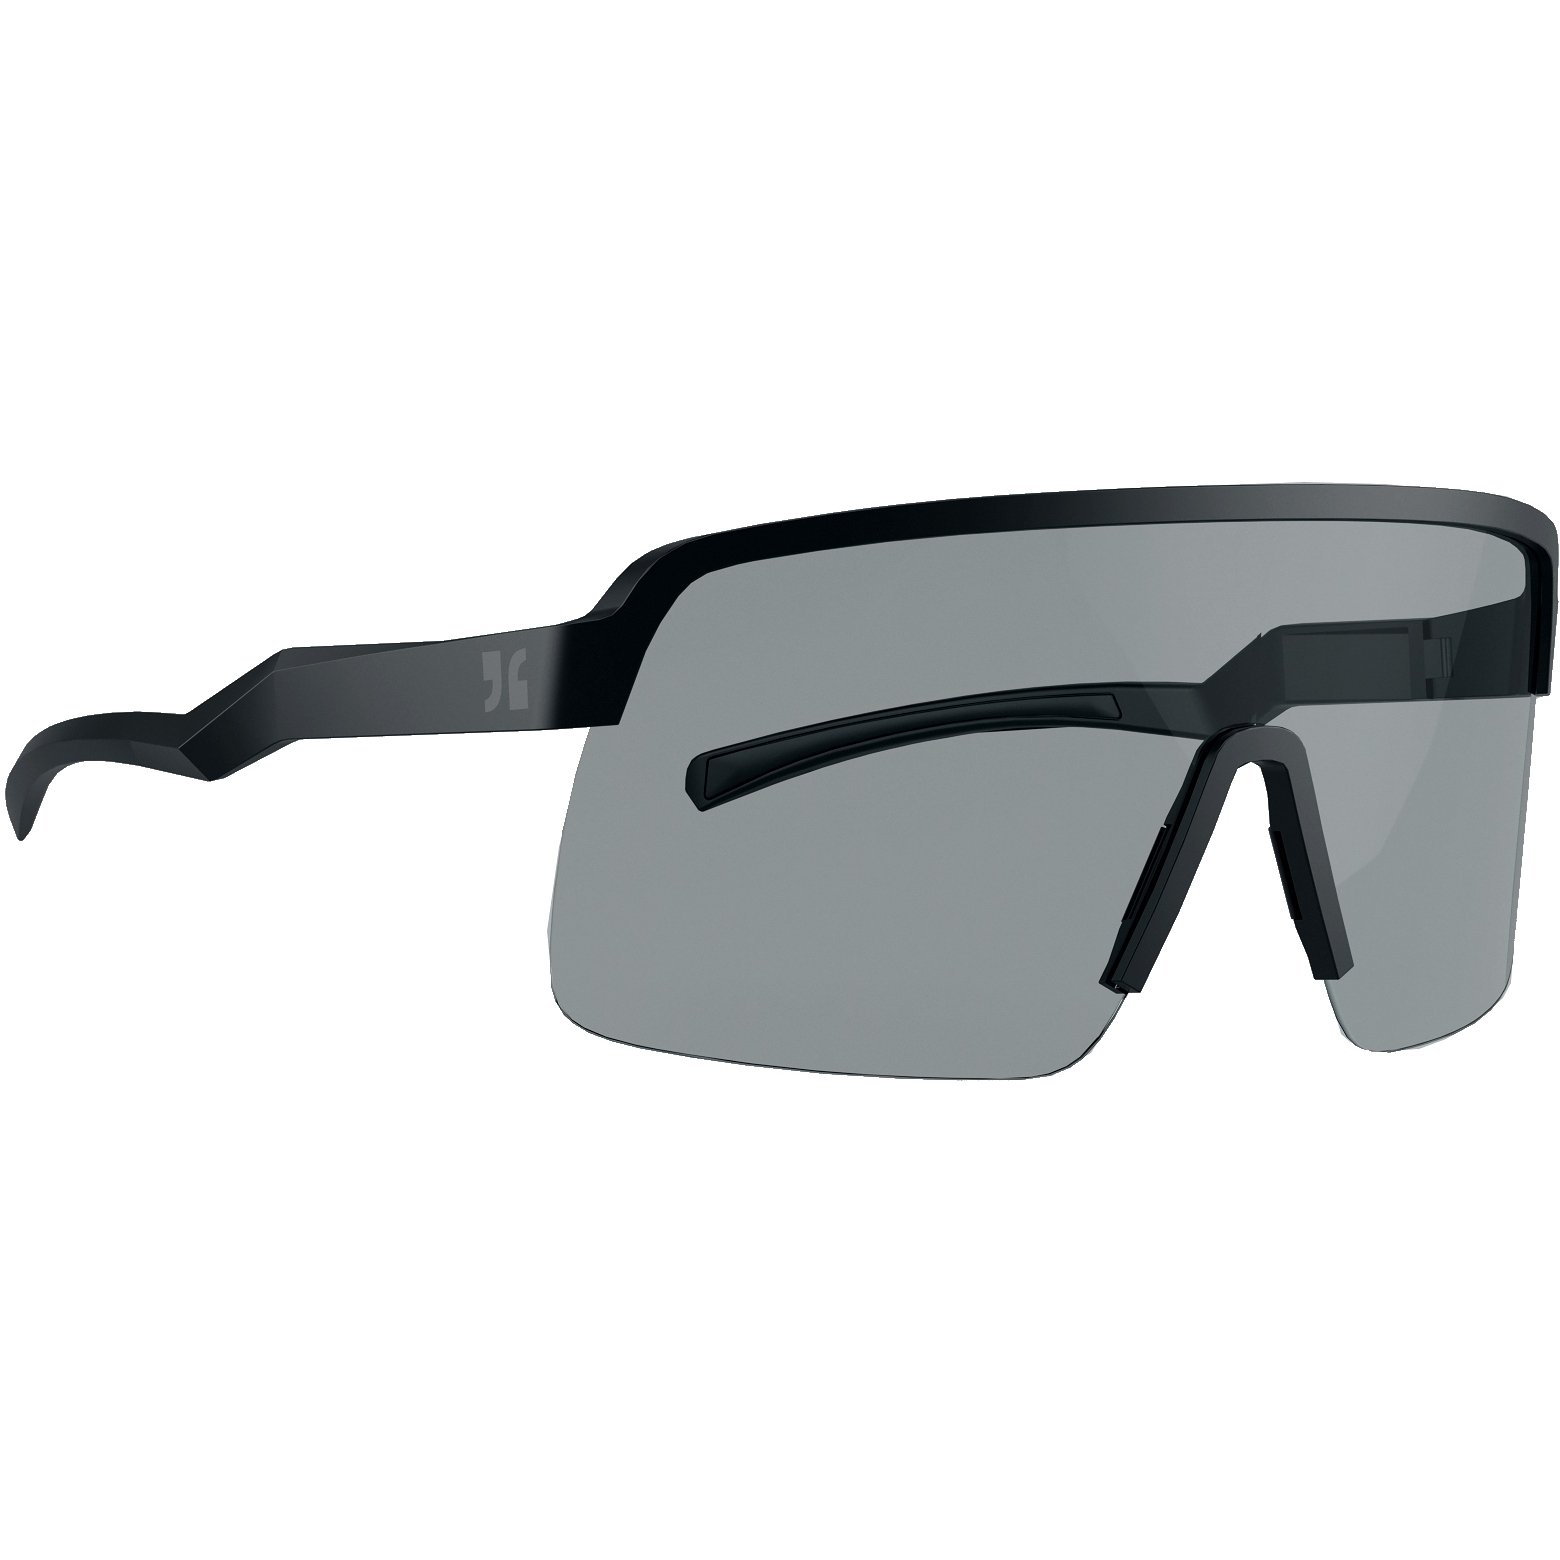 Produktbild von Dirtlej Specs 03 Bike Sonnenbrille - Photochromic - schwarz